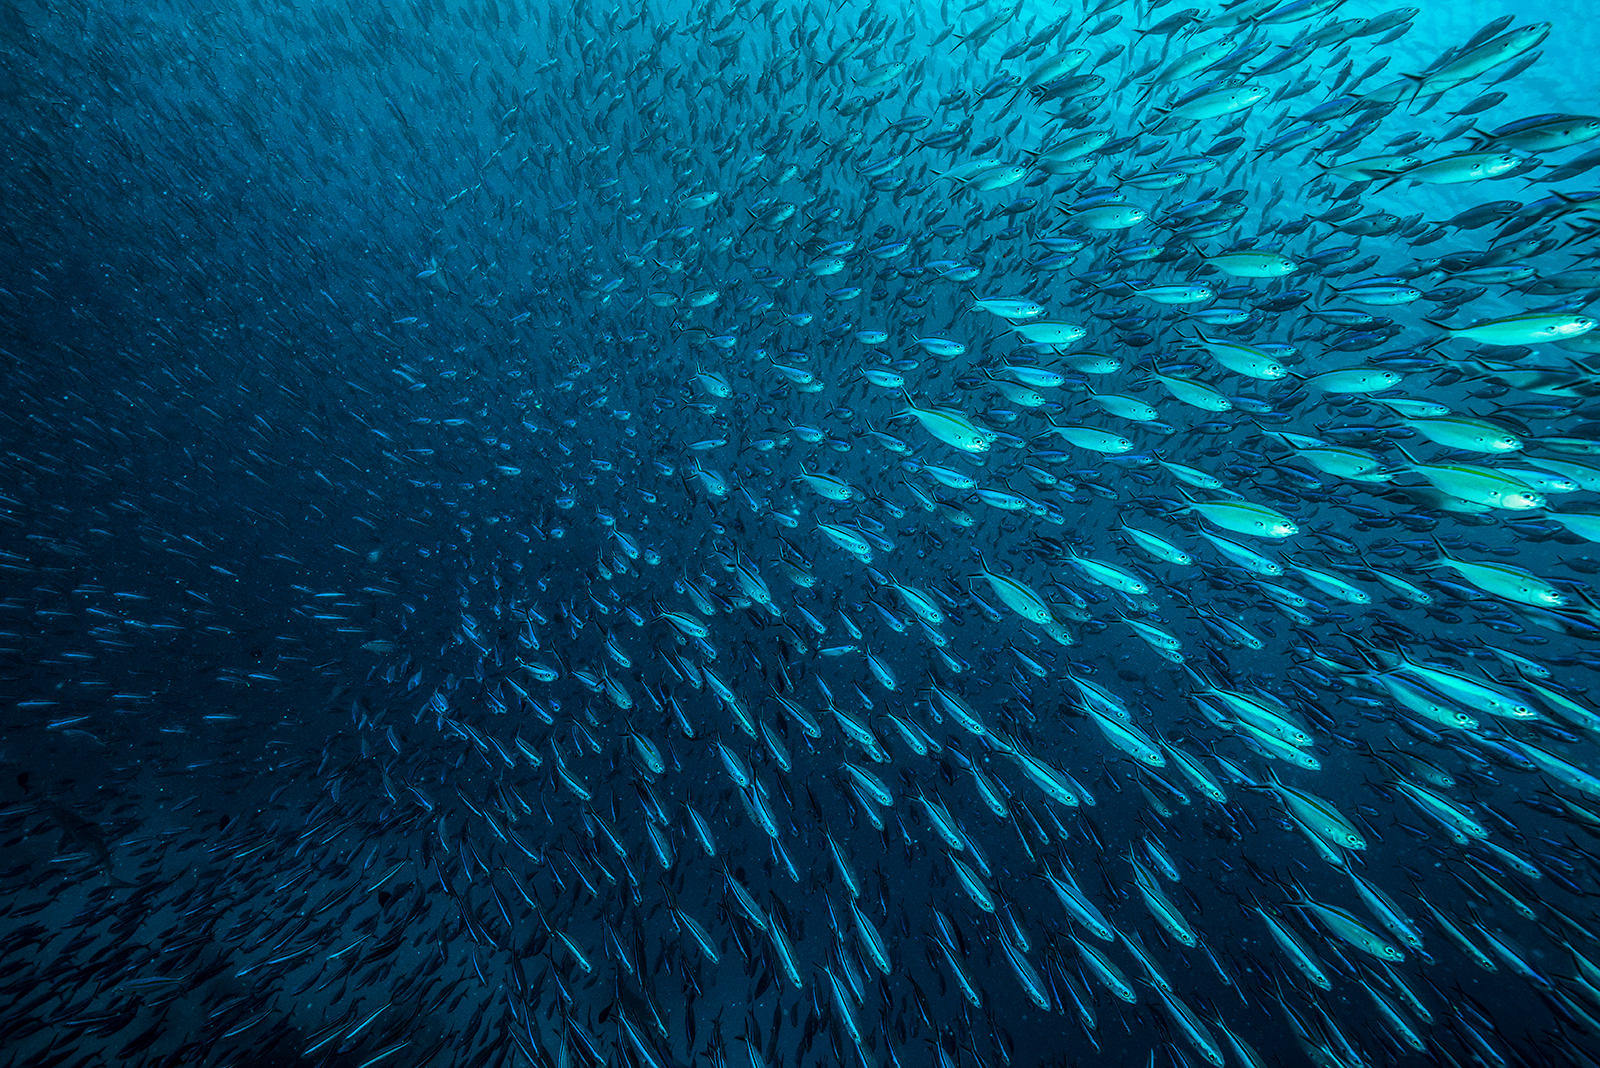 90 Prozent aller Fischbestände gelten als maximal befischt oder überfischt. Zellbasierter Fisch aus dem Bioreaktor kann künftig alternativ einen entscheidenden Beitrag zur globalen Versorgungssicherheit bei tierischem Protein leisten.